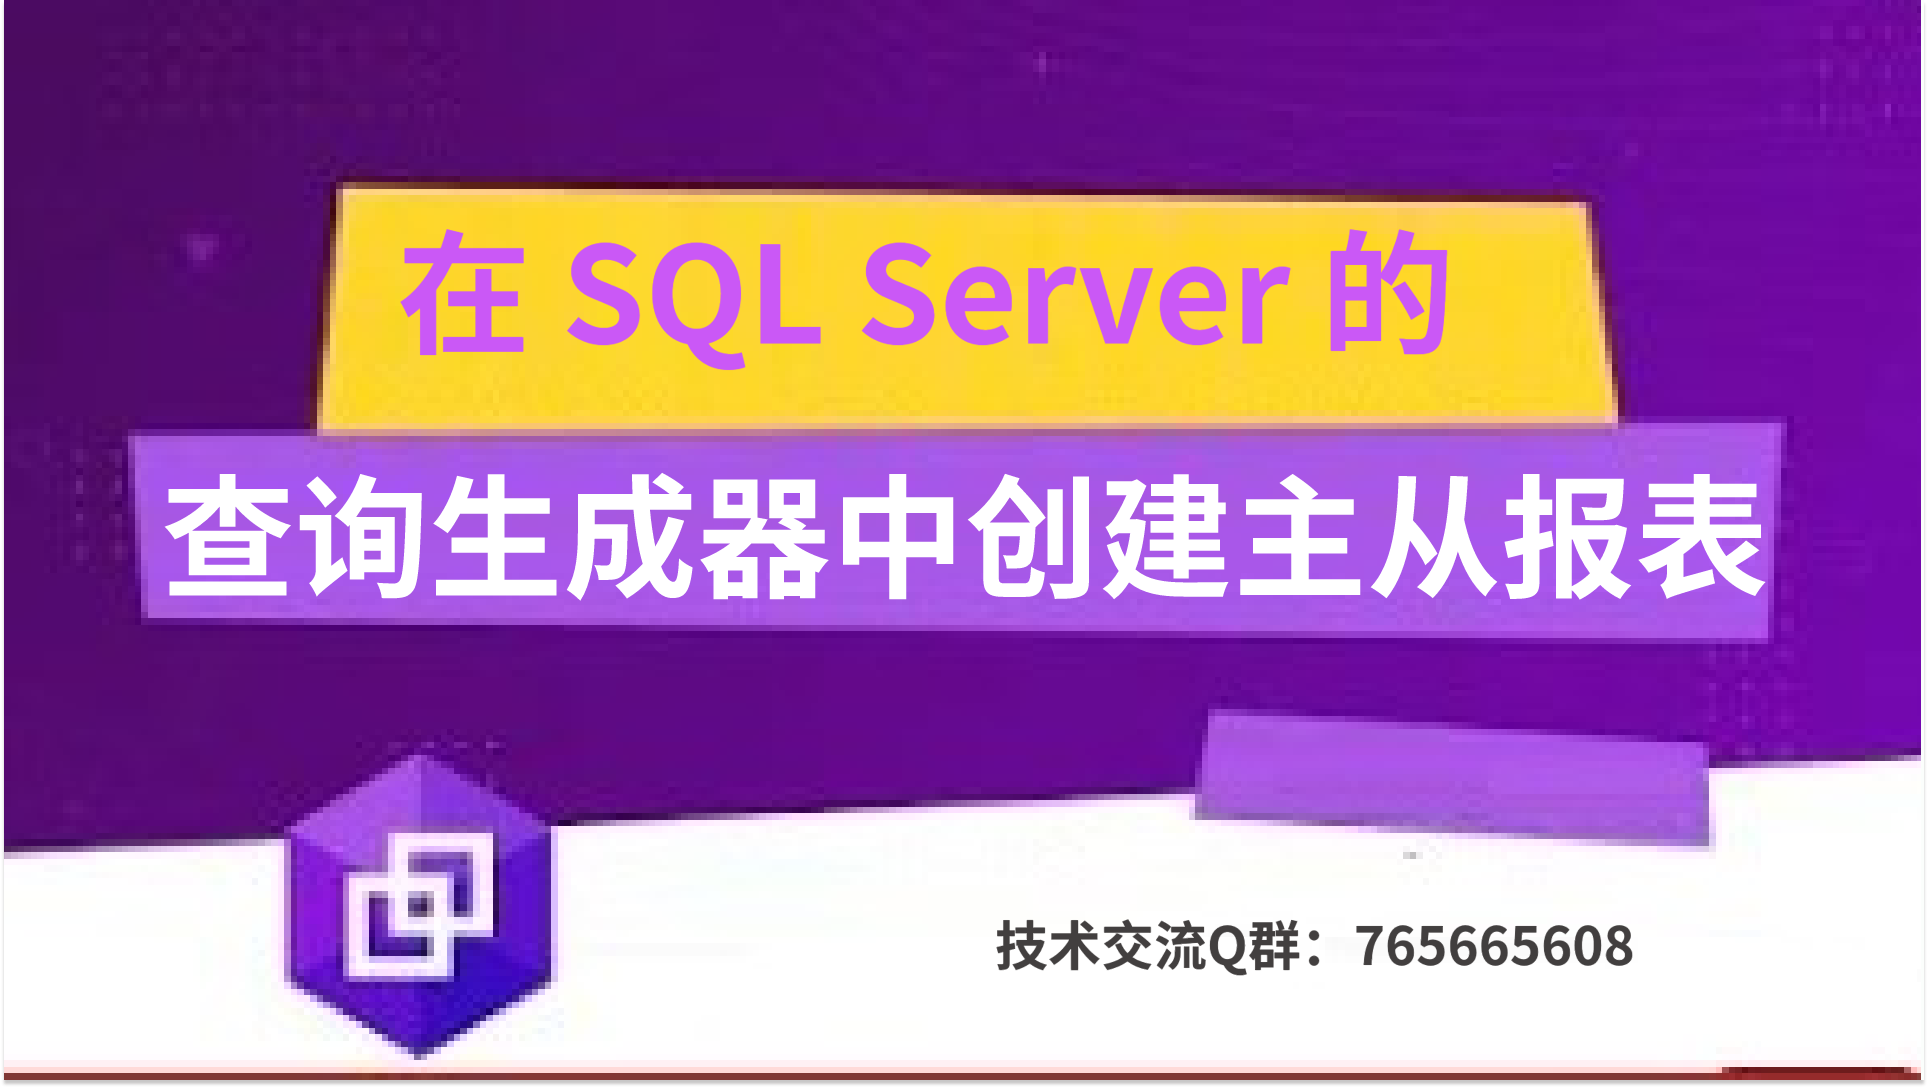 在 SQL Server 的查询生成器中创建主从报表